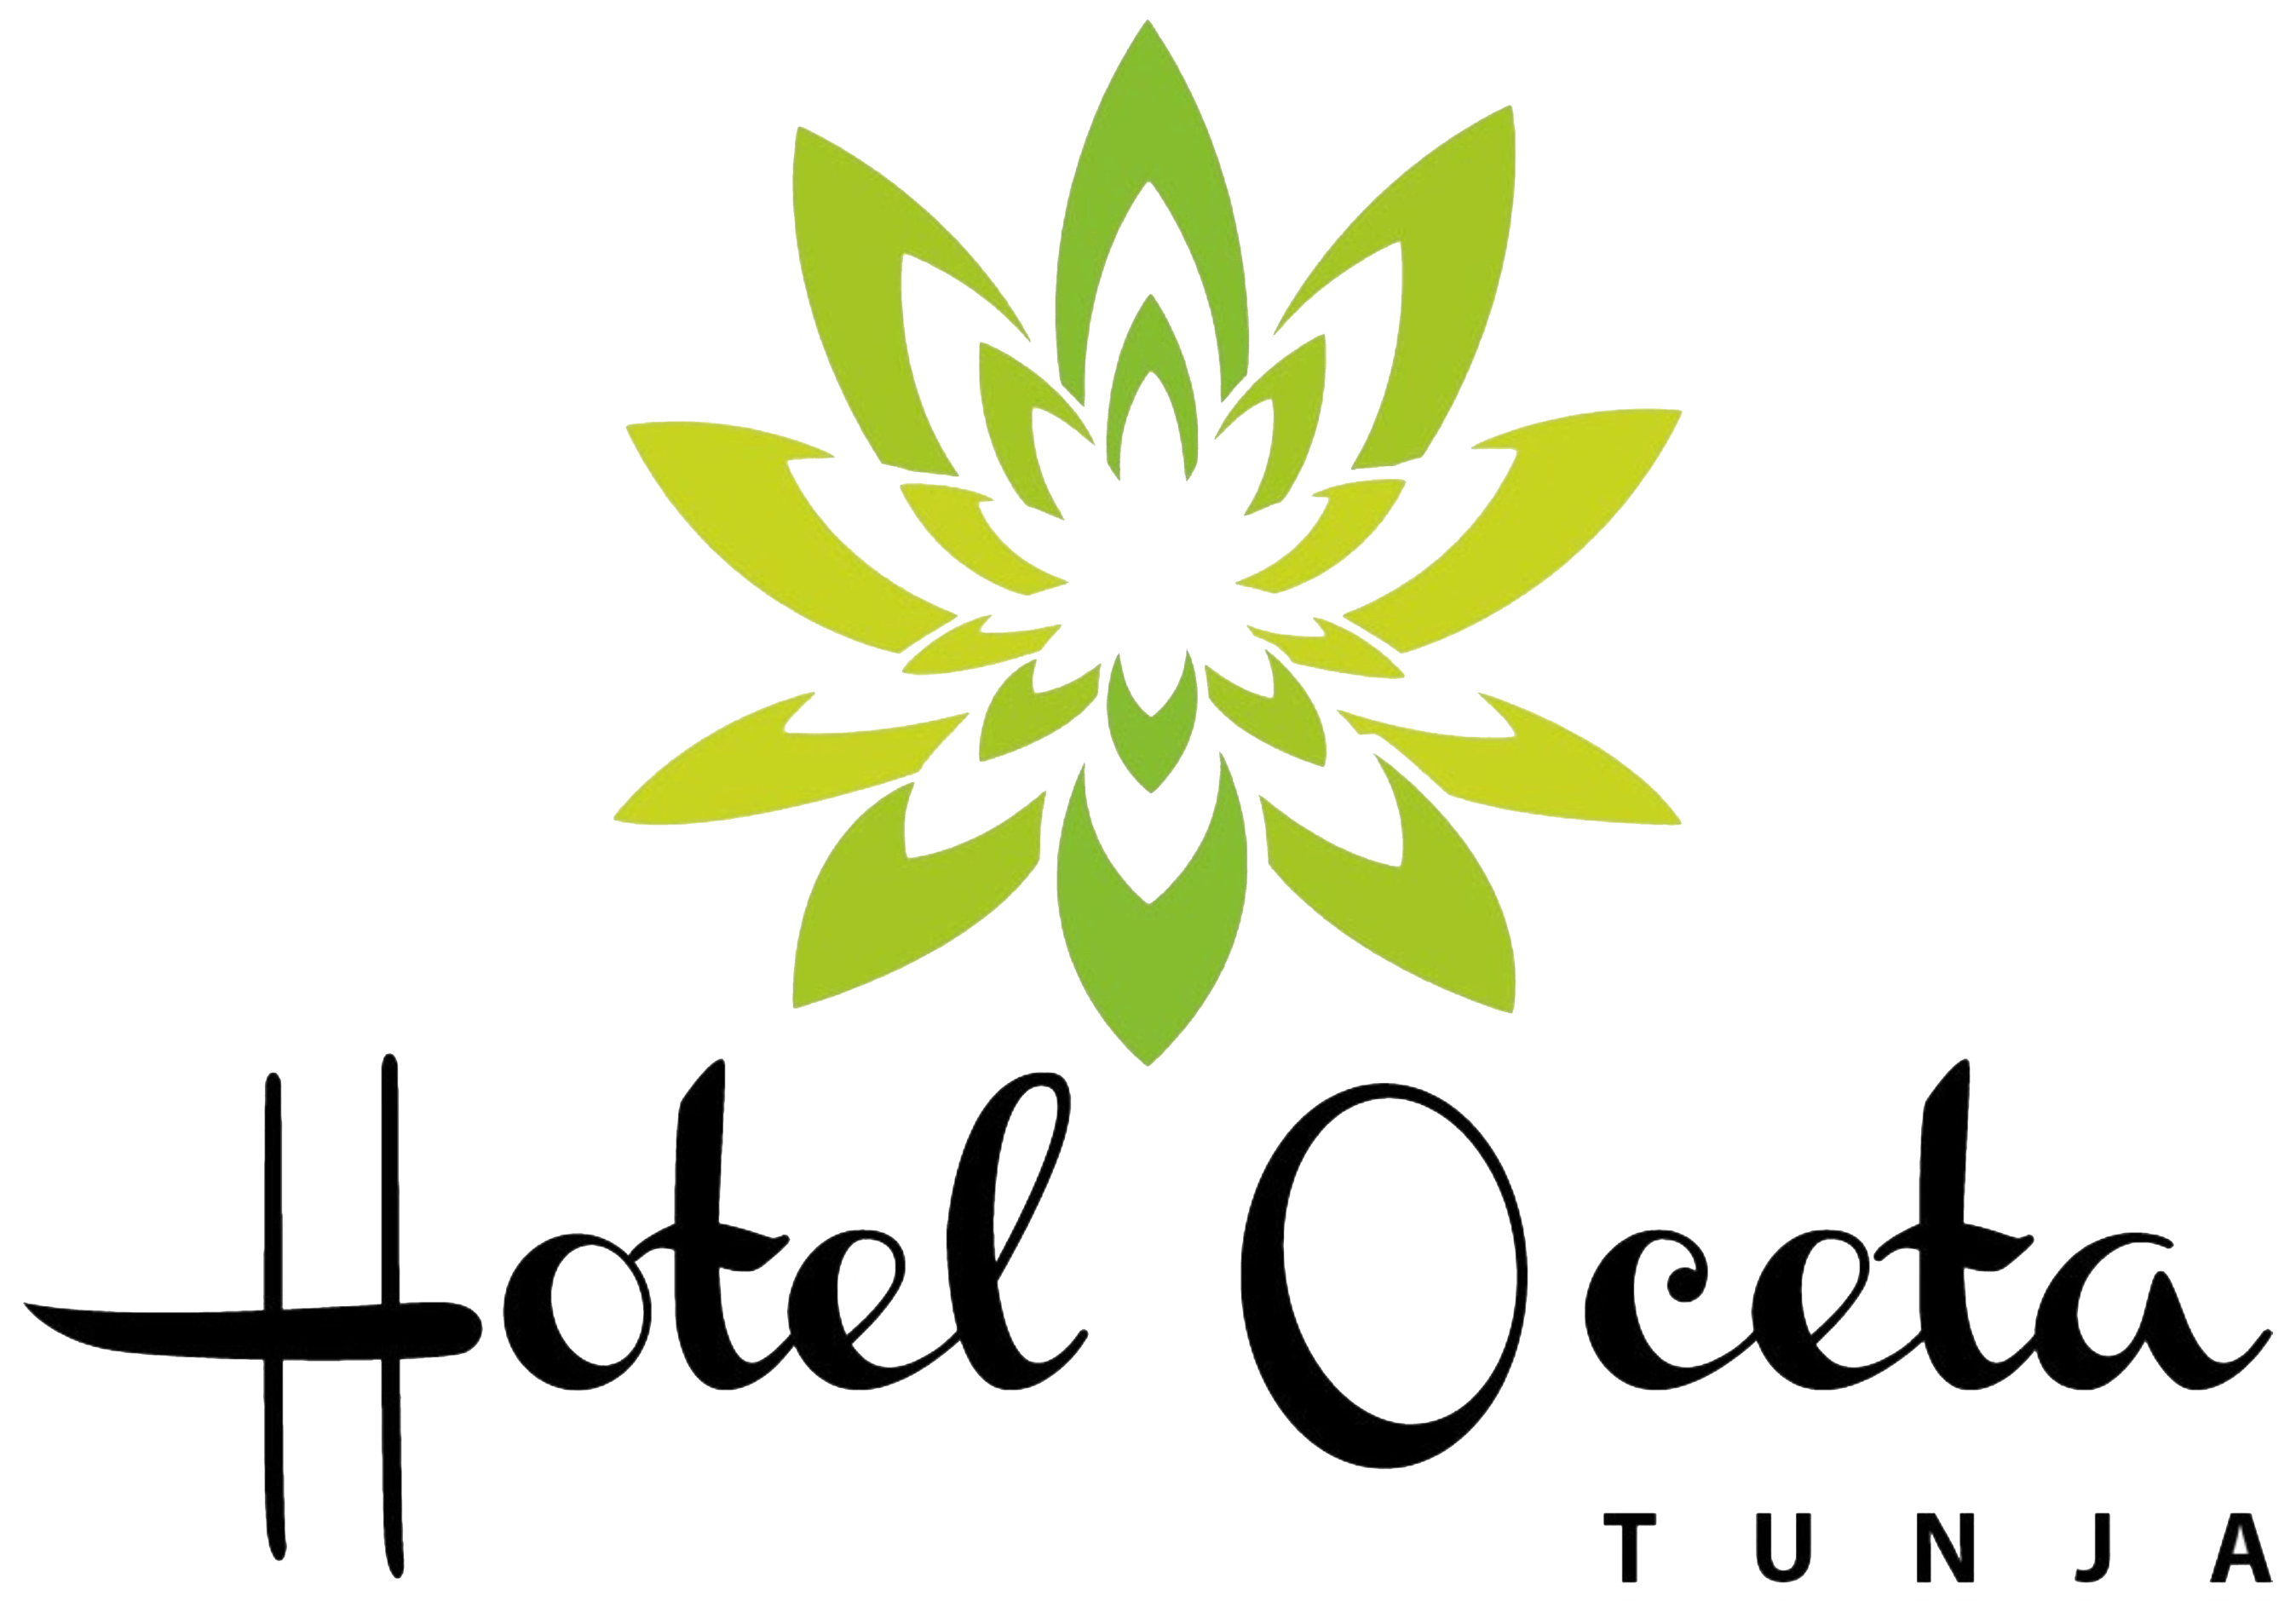 Hotel Ocetá